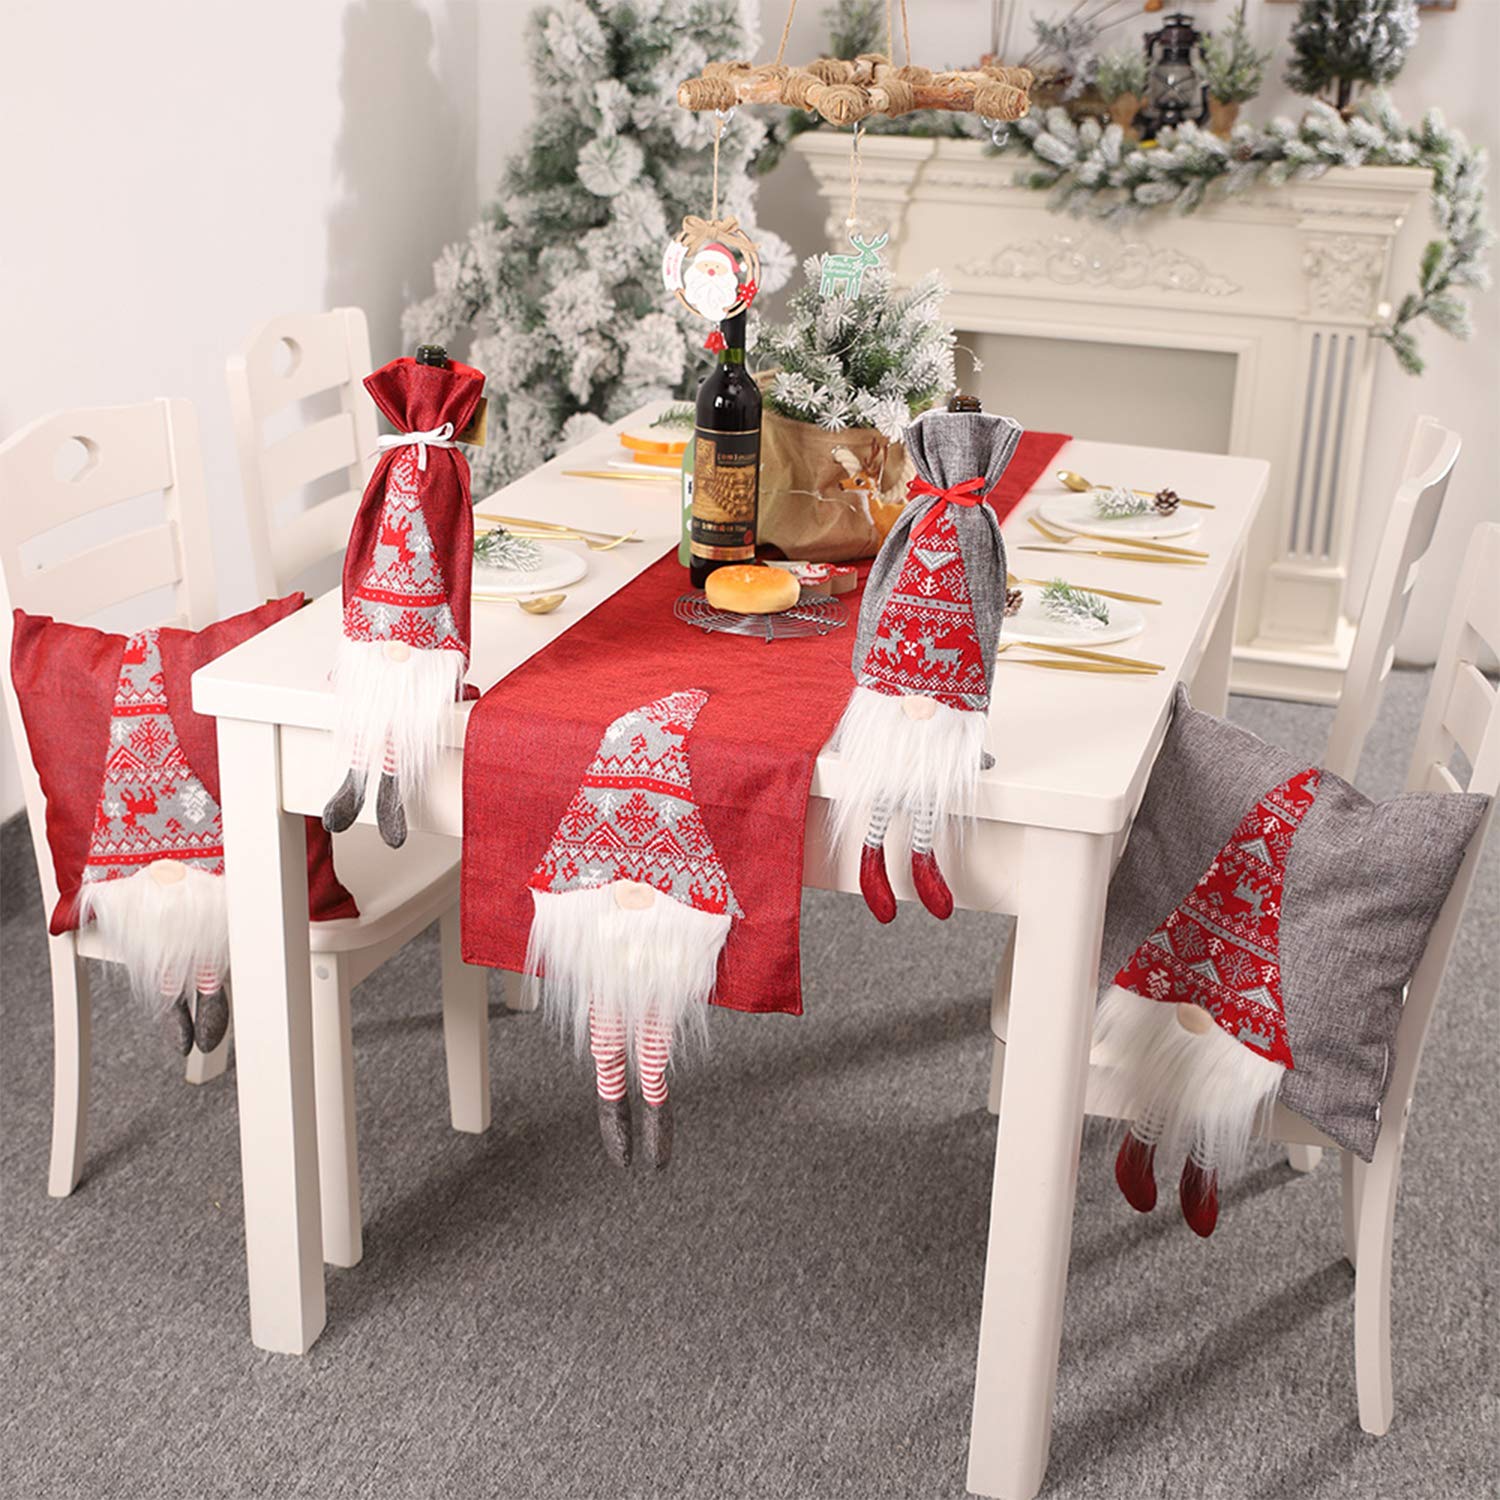 Hô biến phòng ăn gia đình ngập tràn không khí Giáng sinh thật dễ dàng chỉ bằng chiếc khăn trải bàn - Ảnh 3.